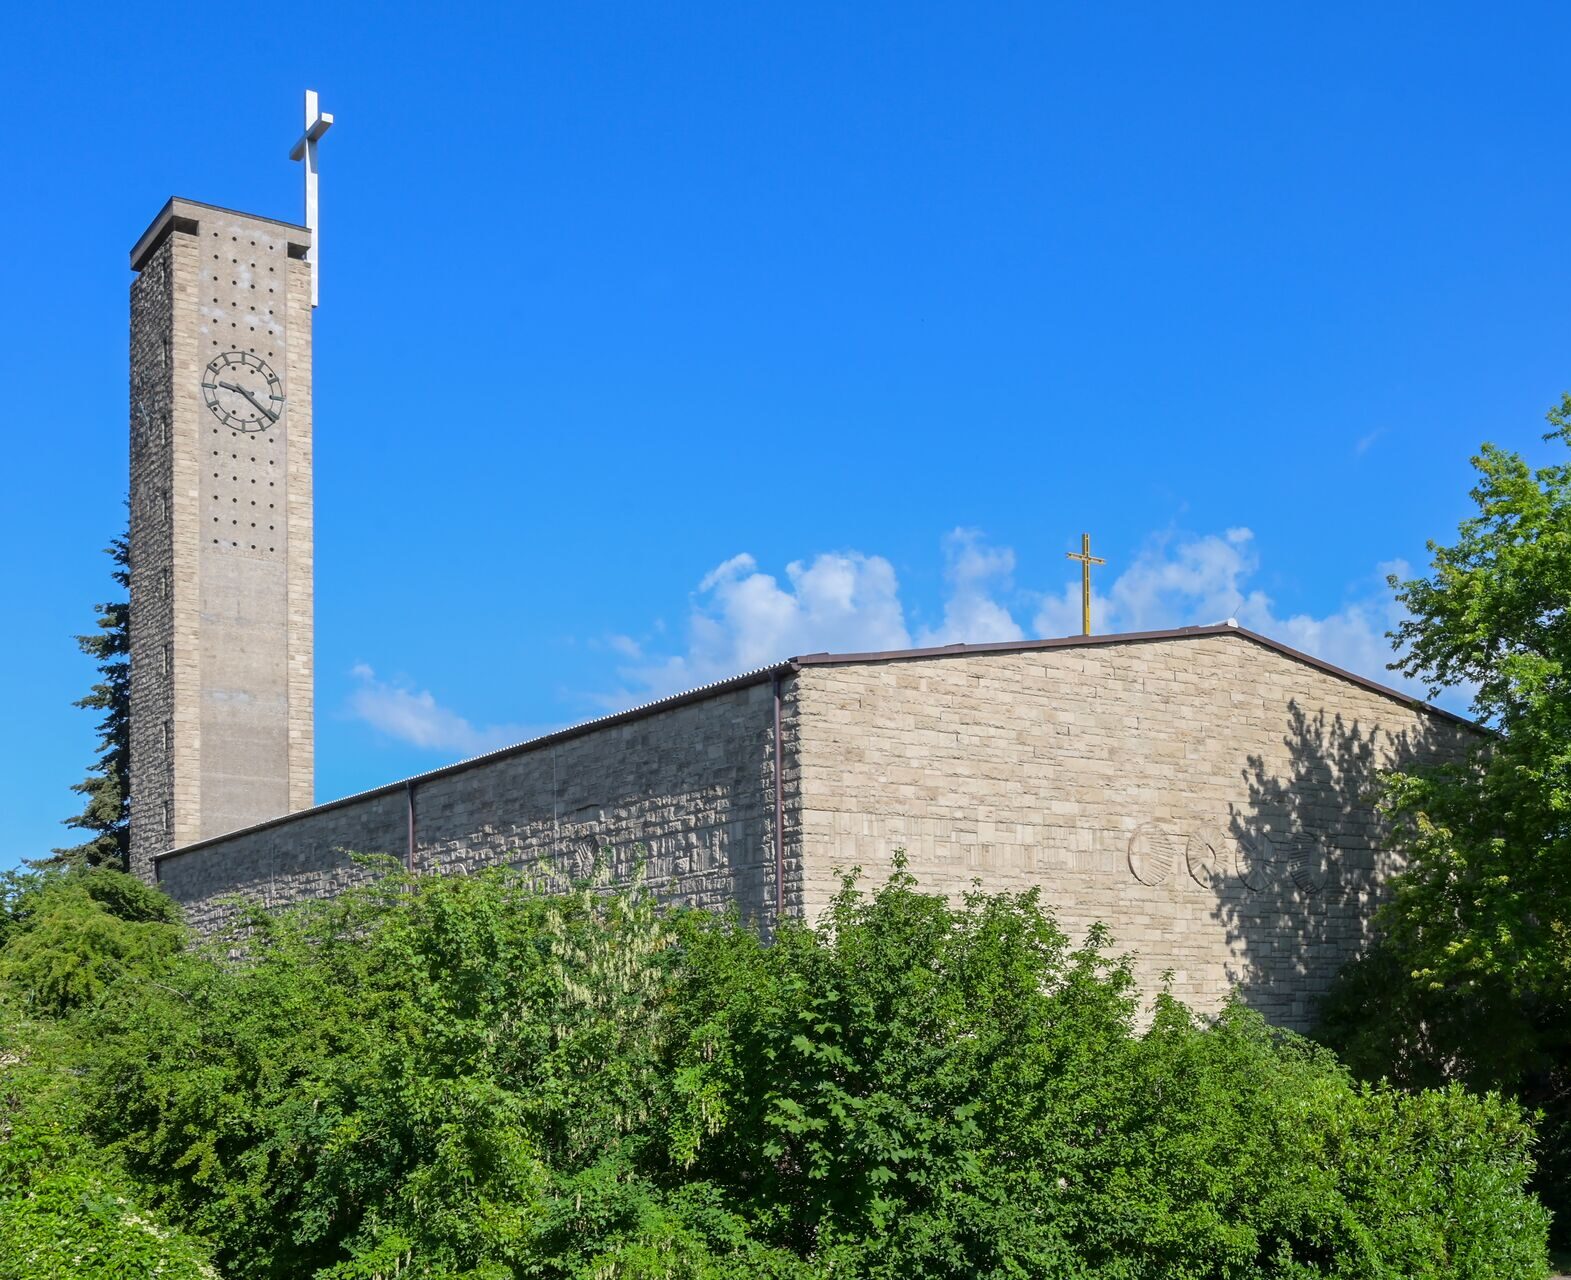 moderne Kirche von außen, grauer Stein, hoher, flacher Turm mit Kreuz und Uhr